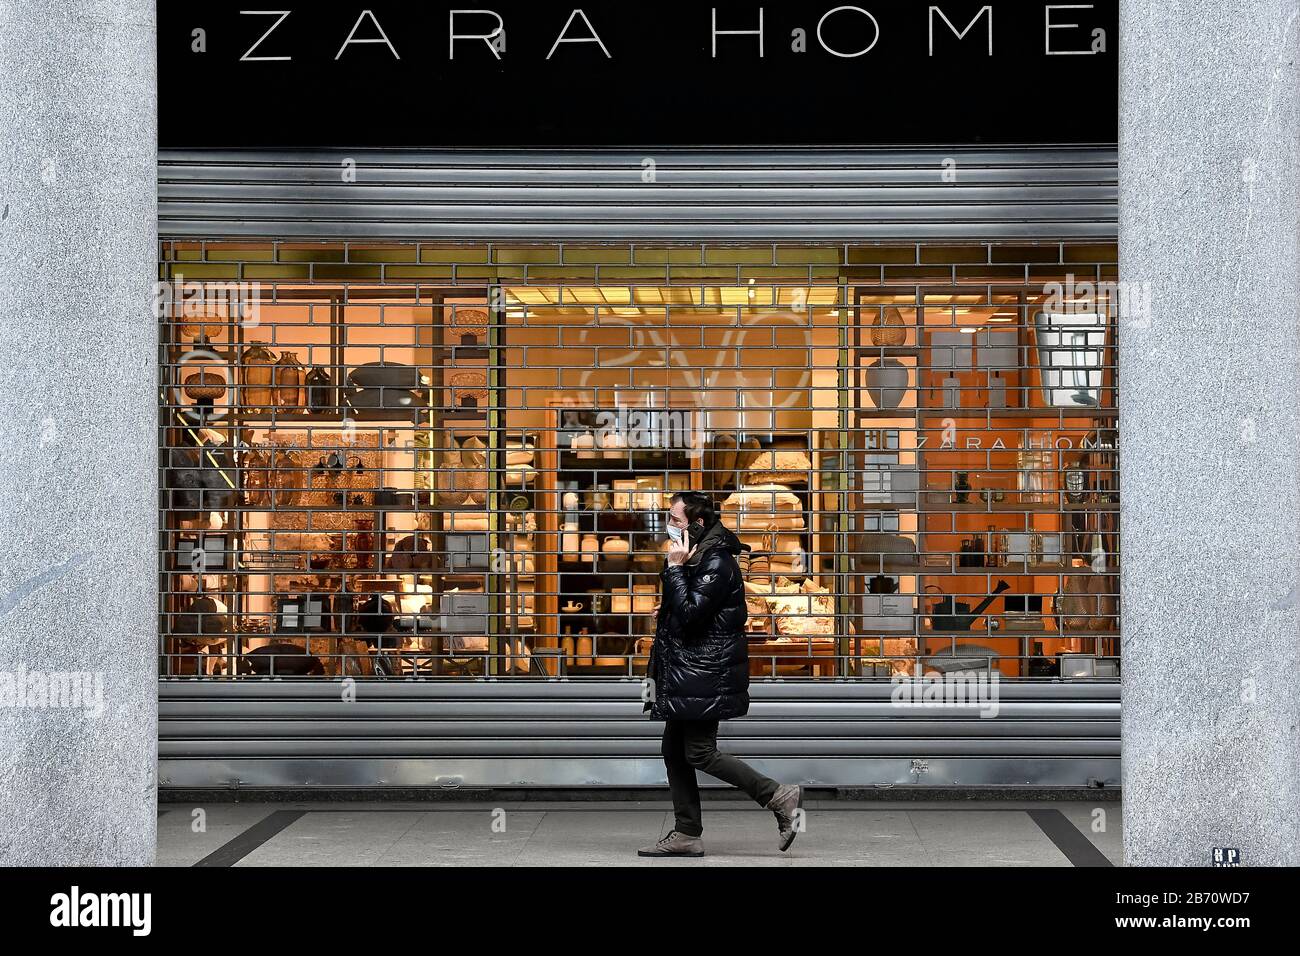 Zara home shop -Fotos und -Bildmaterial in hoher Auflösung – Alamy